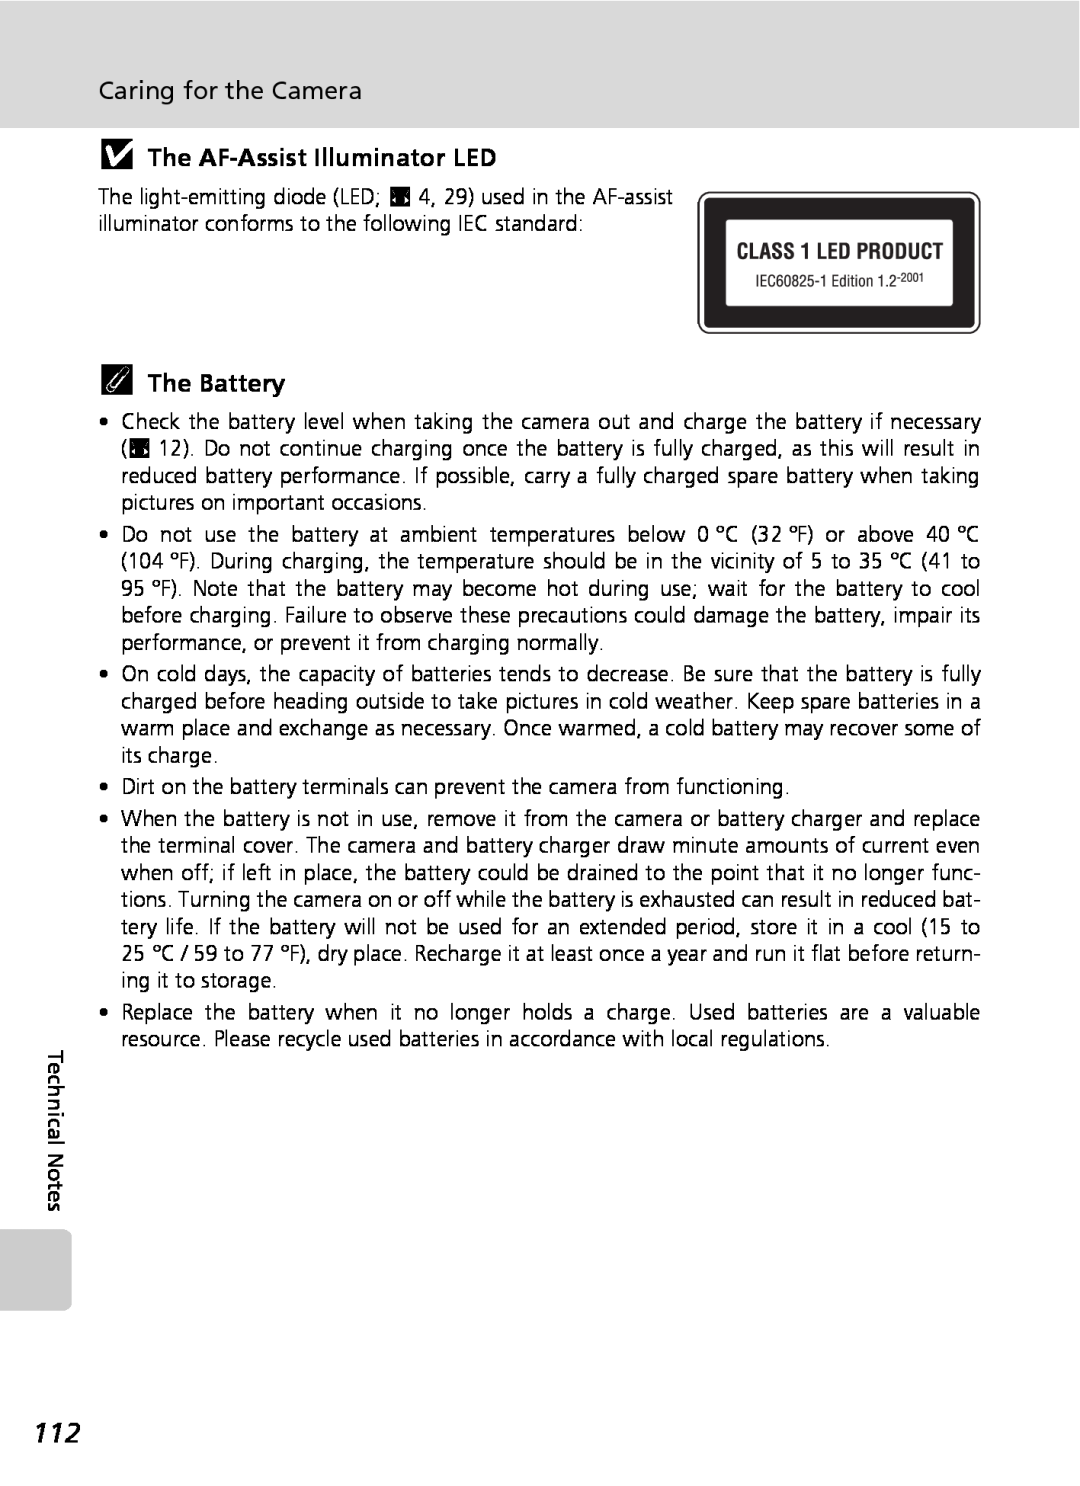 Nikon COOLPIXS9 manual jThe AF-AssistIlluminator LED, kThe Battery, Caring for the Camera 